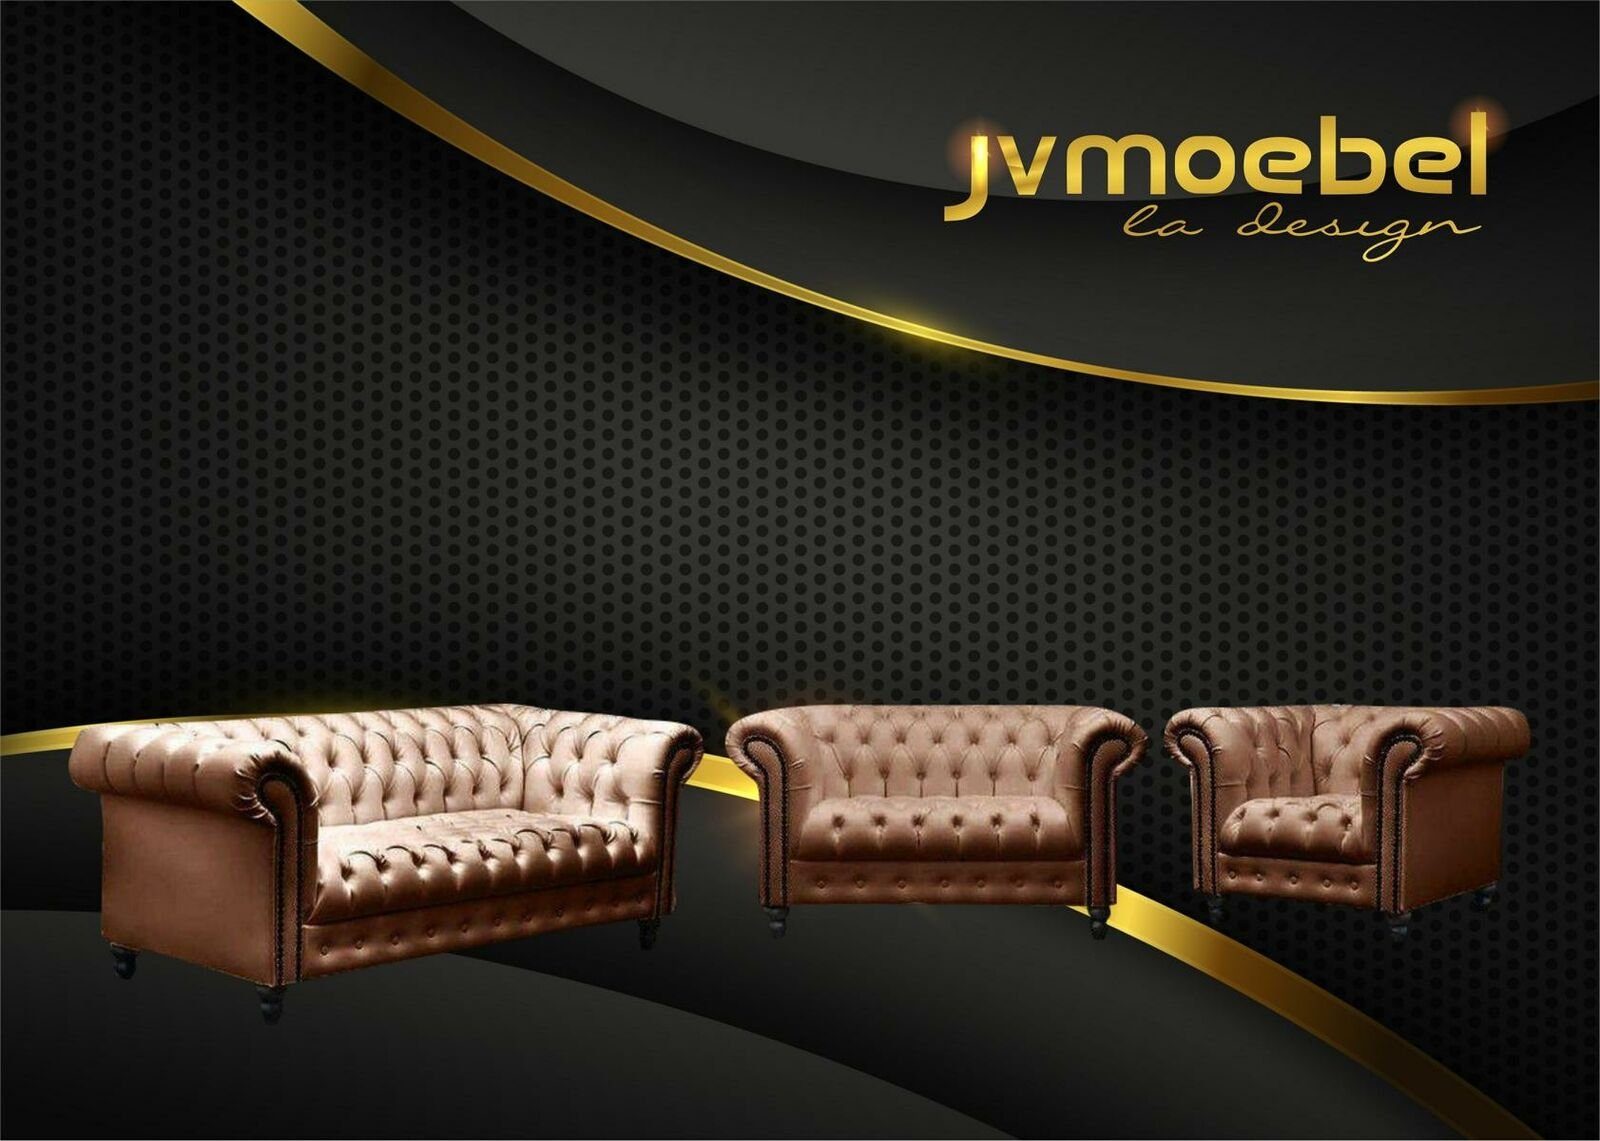 JVmoebel Sofa, Wohnzimmer Chesterfield Design Sofagarnitur Möbel Couch Braun